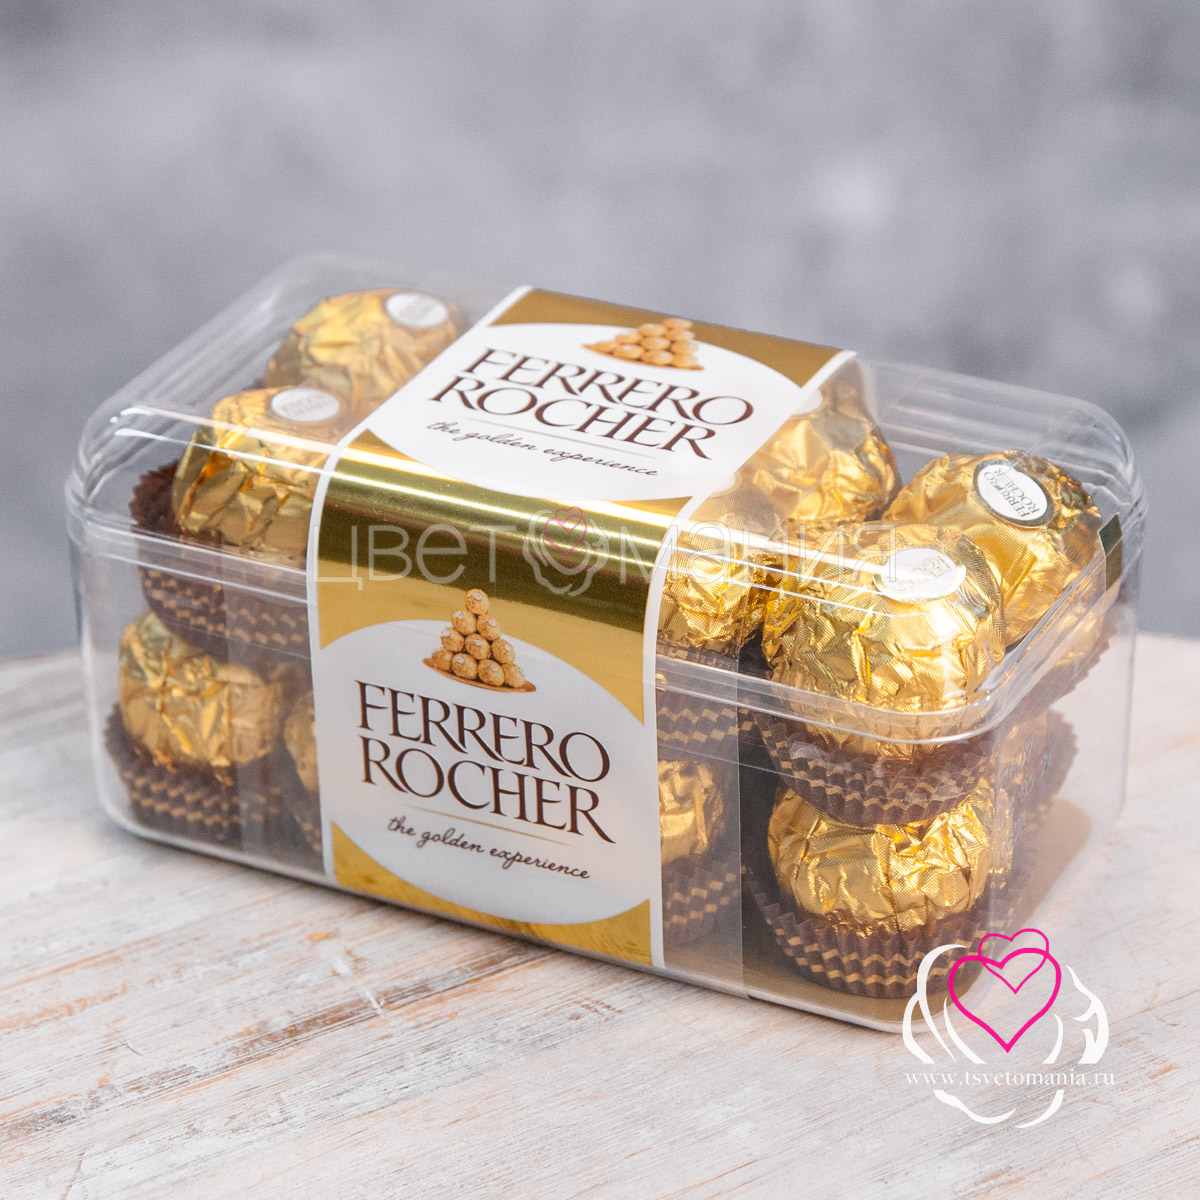 Ferrero rocher конфеты 200 г конфеты ferrero rocher 200 г